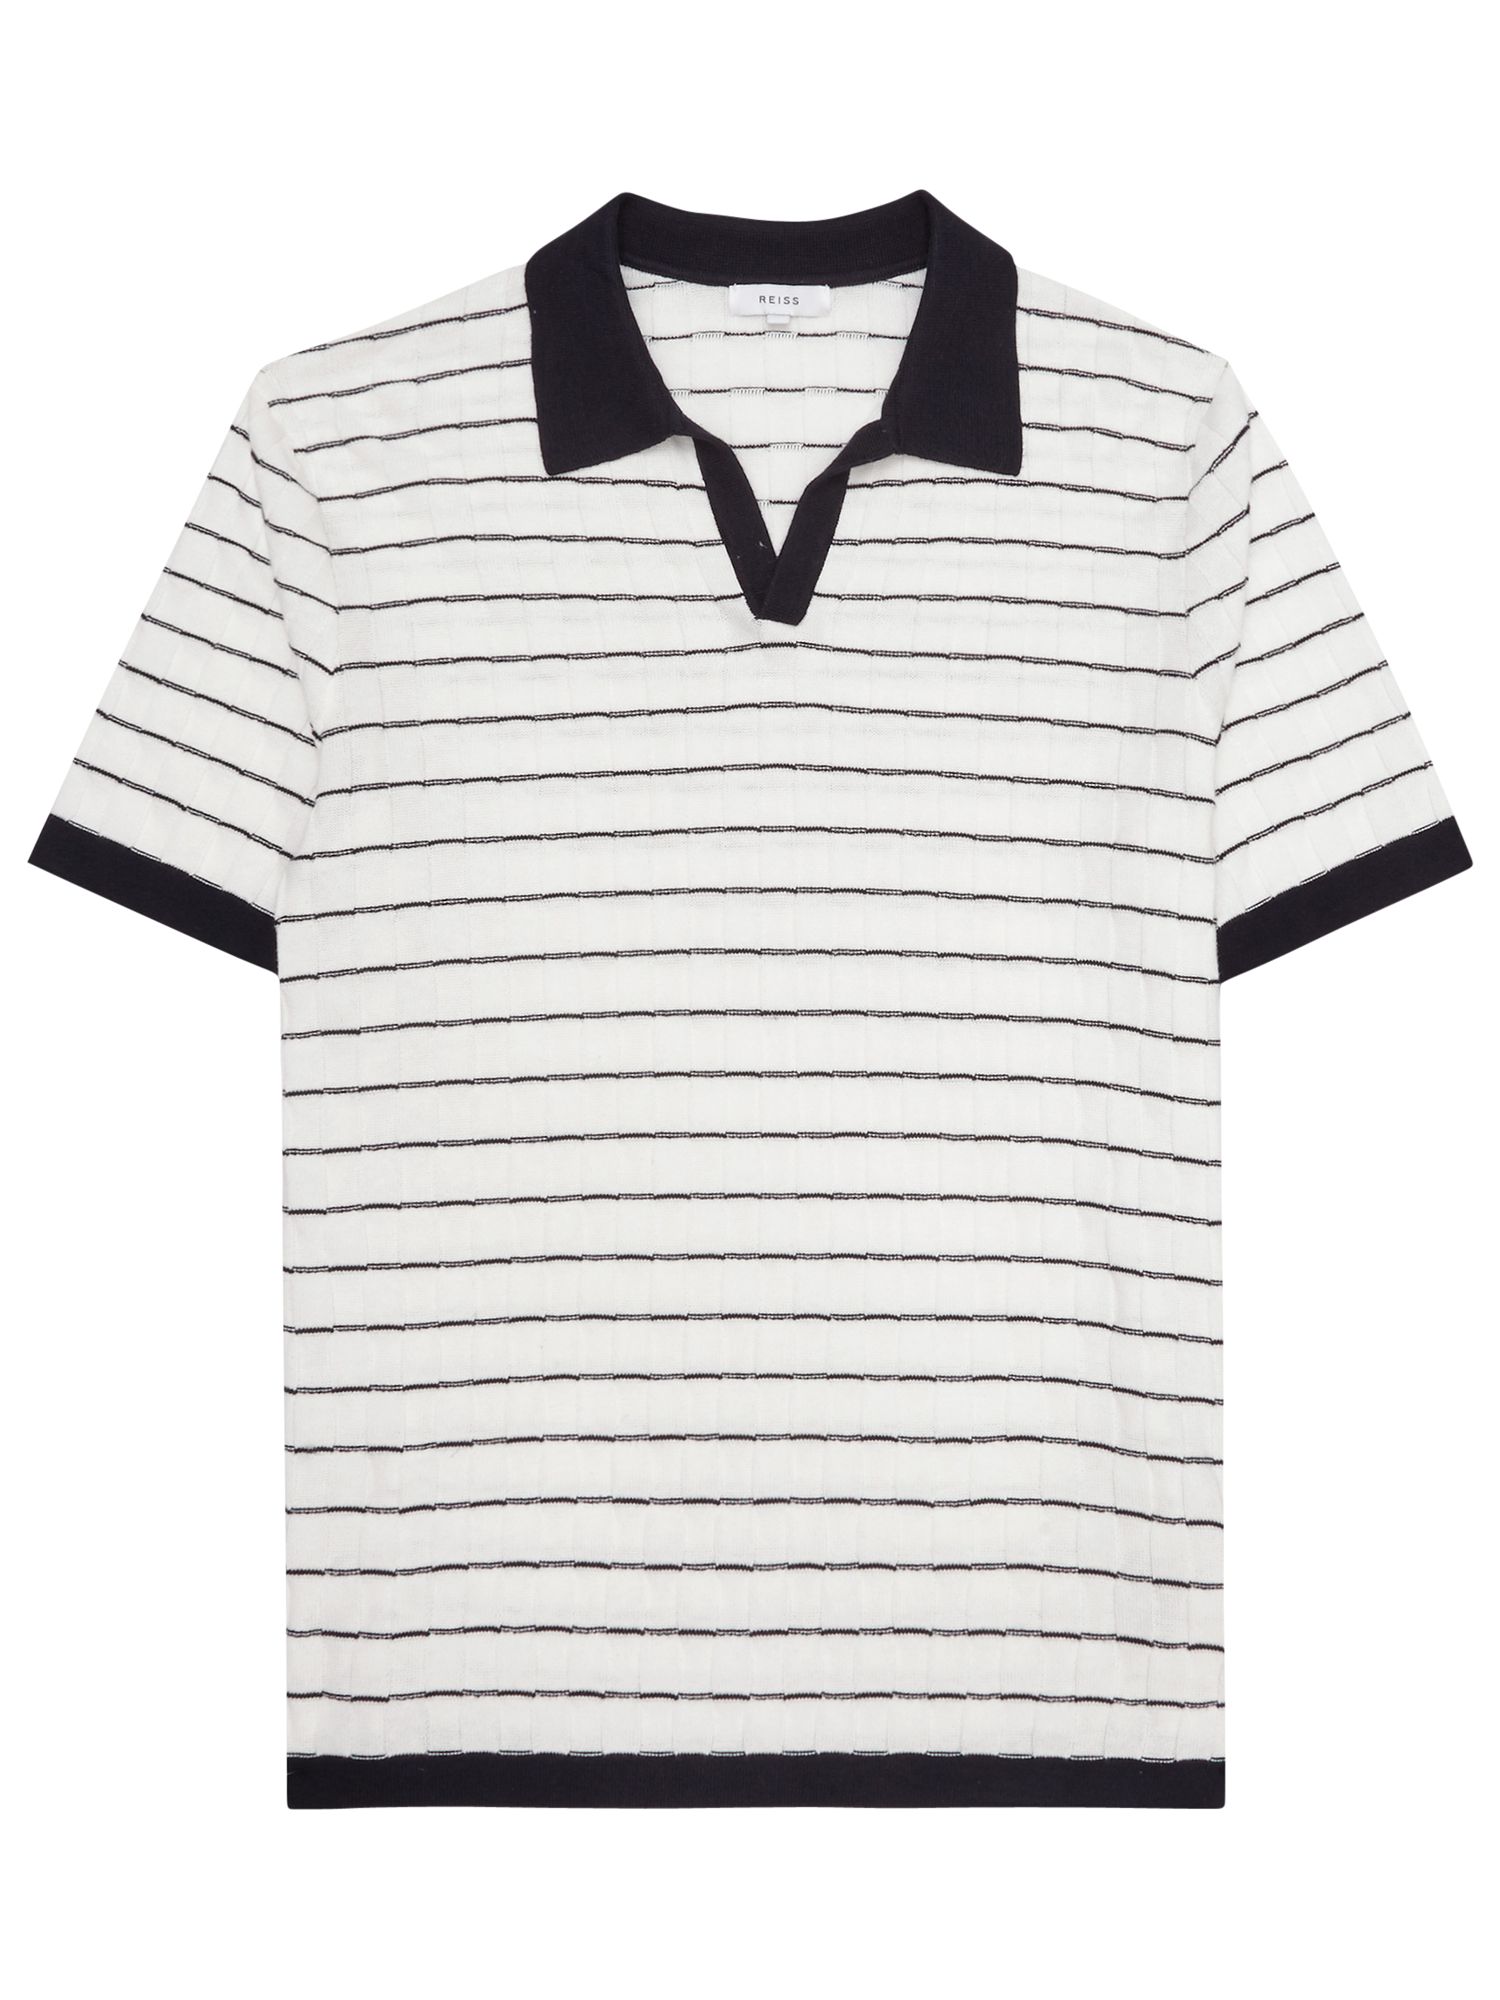 Reiss Martini Textured Stripe Polo Shirt, White/Navy, S